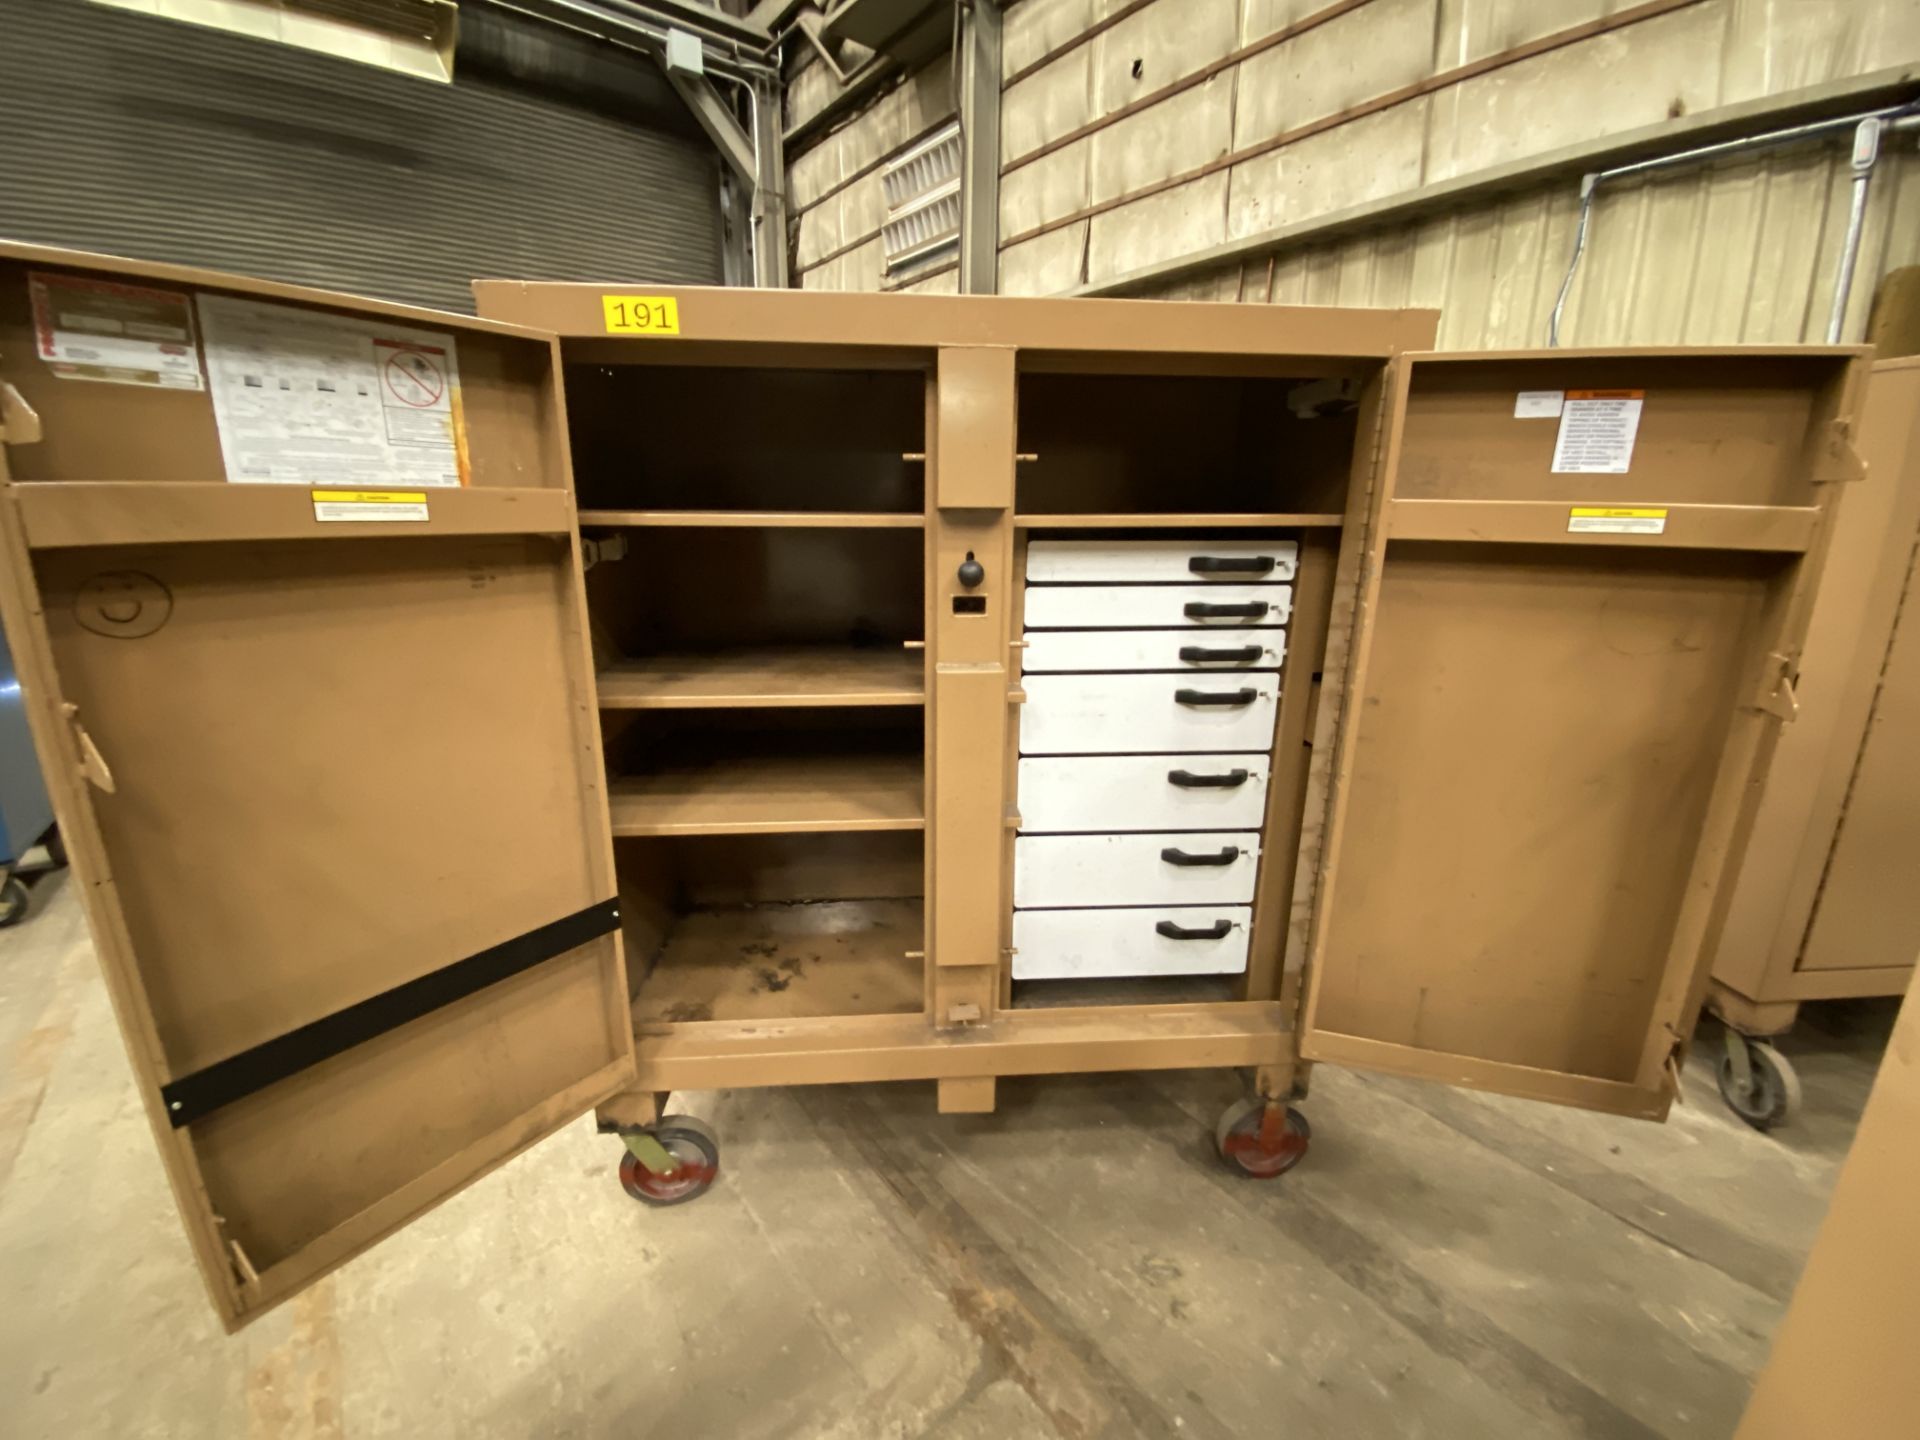 Knaack Jobmaster mn 112 rolling job site tool cabinet, 2 door, 52" x 27", 52" inside measurements, - Image 2 of 2